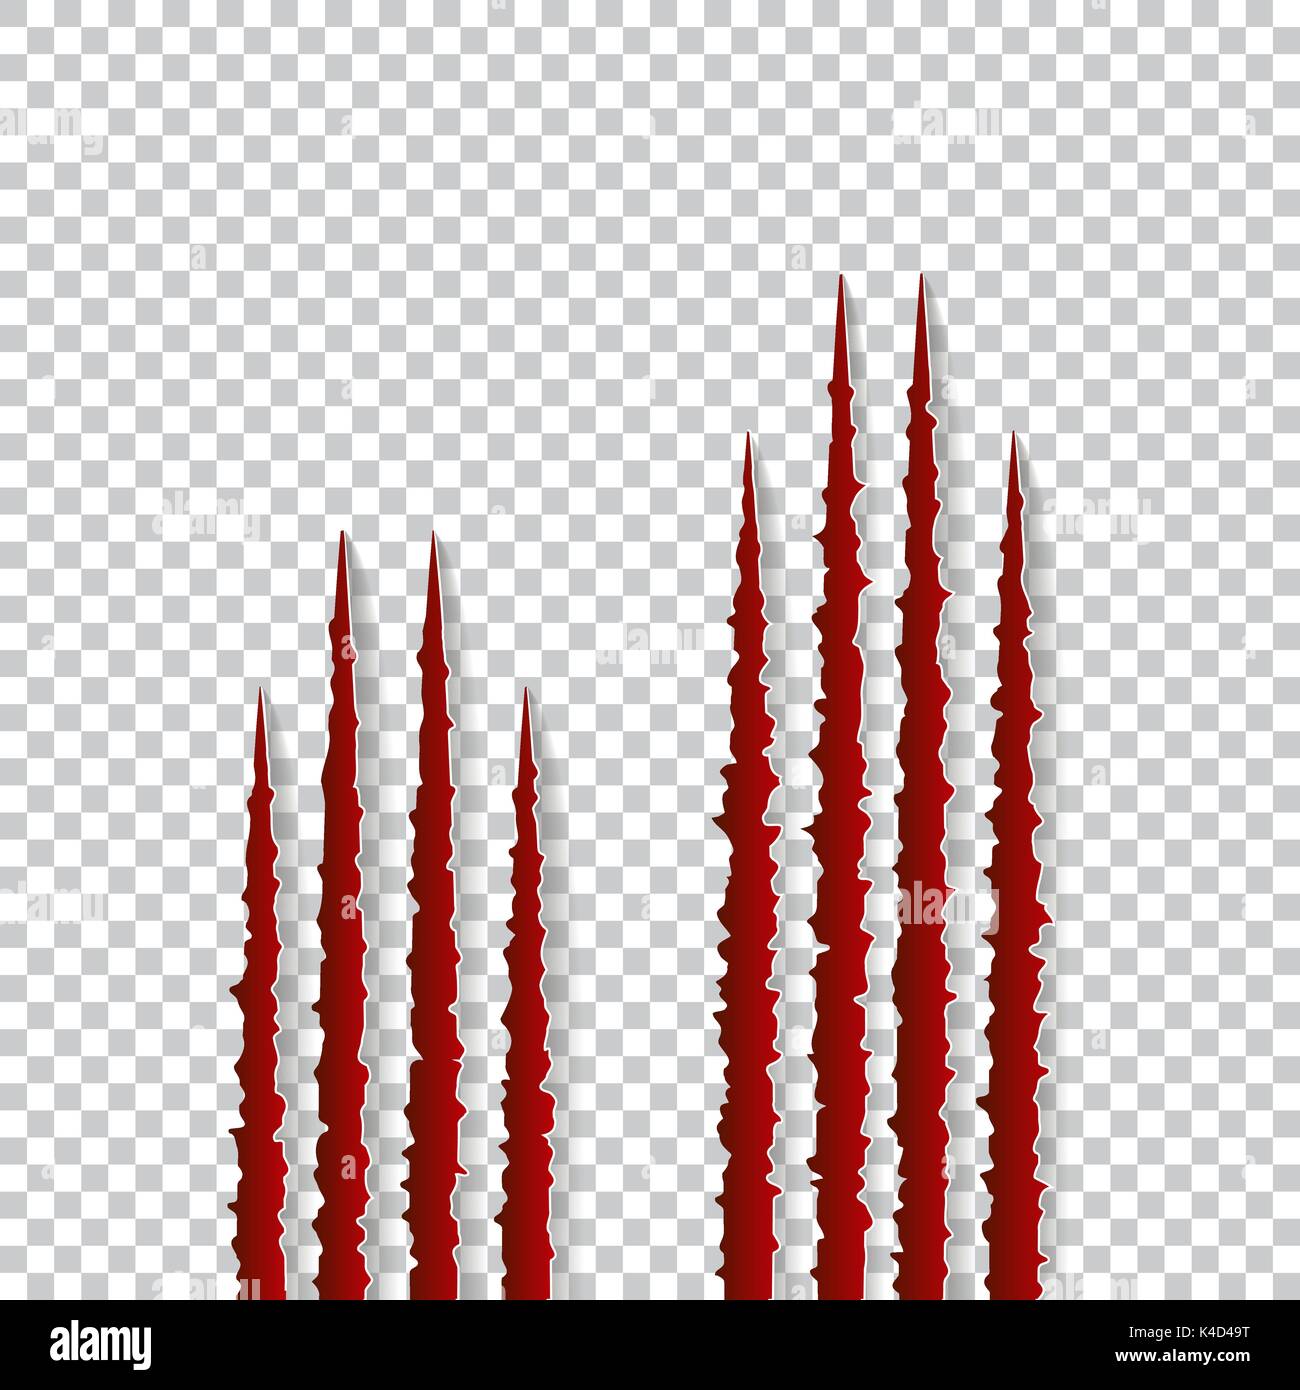 Rote krallen Kratzer - Vektor auf transparentem Hintergrund isoliert. Talons Schnitte Tier Katze, Hund, Tiger, Löwe, Bär Stock Vektor